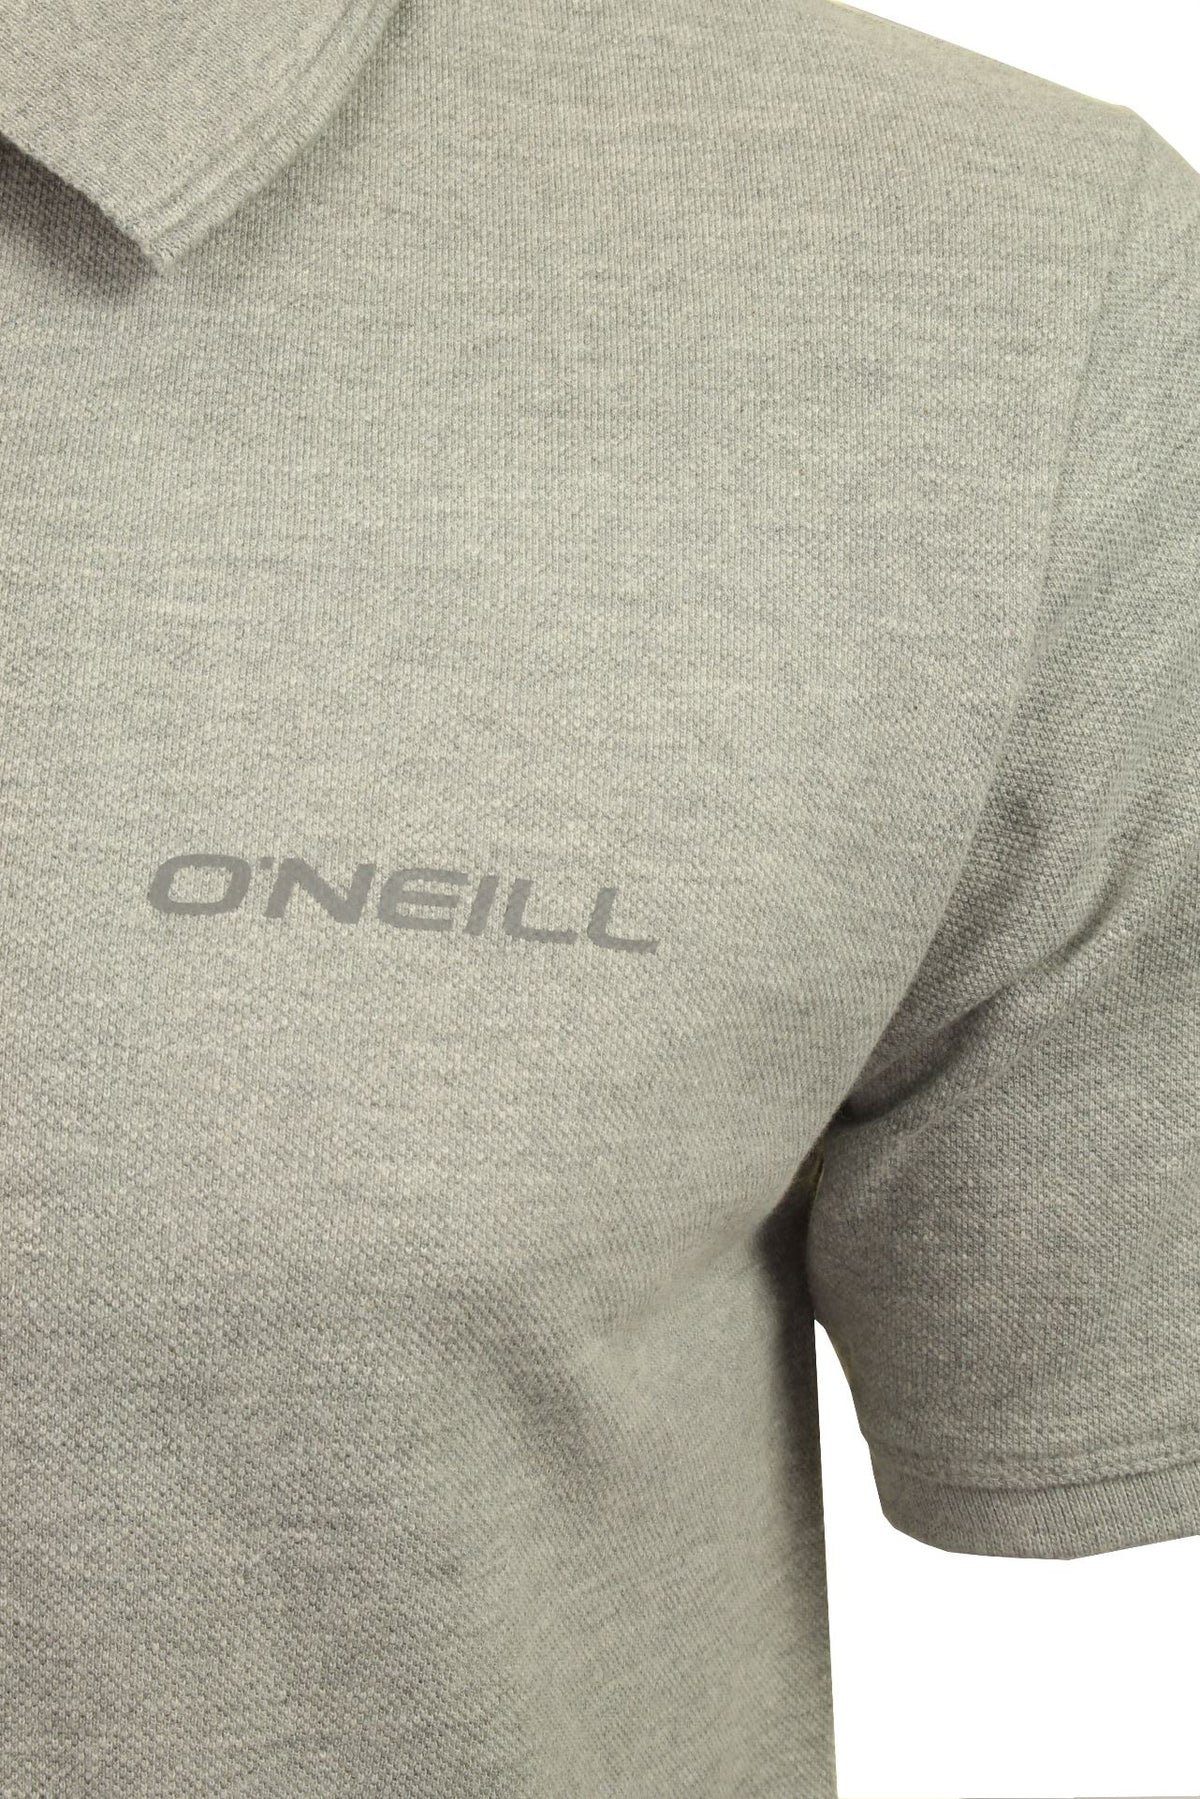 O'Neill Mens Pique Polo T-Shirt, 02, 9A2402, Silver Melee